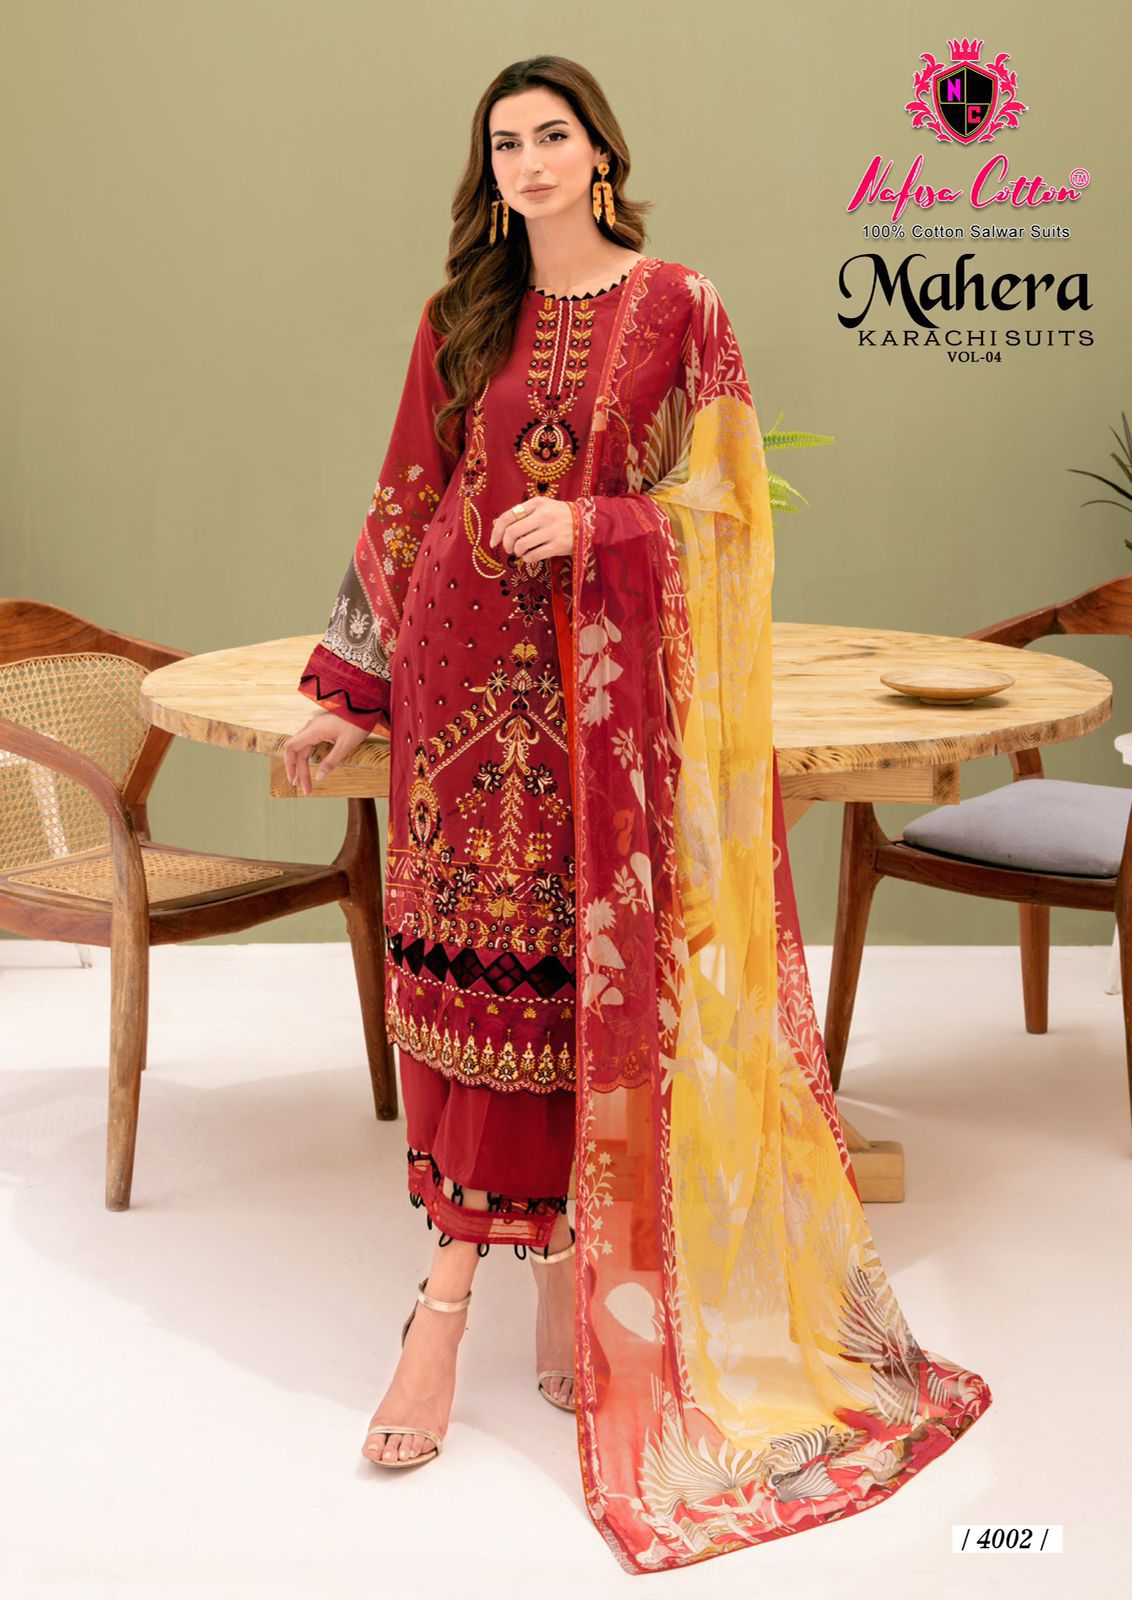 Mahera Vol 4 Nafisa Cotton Soft Cotton Karachi Salwar Suits